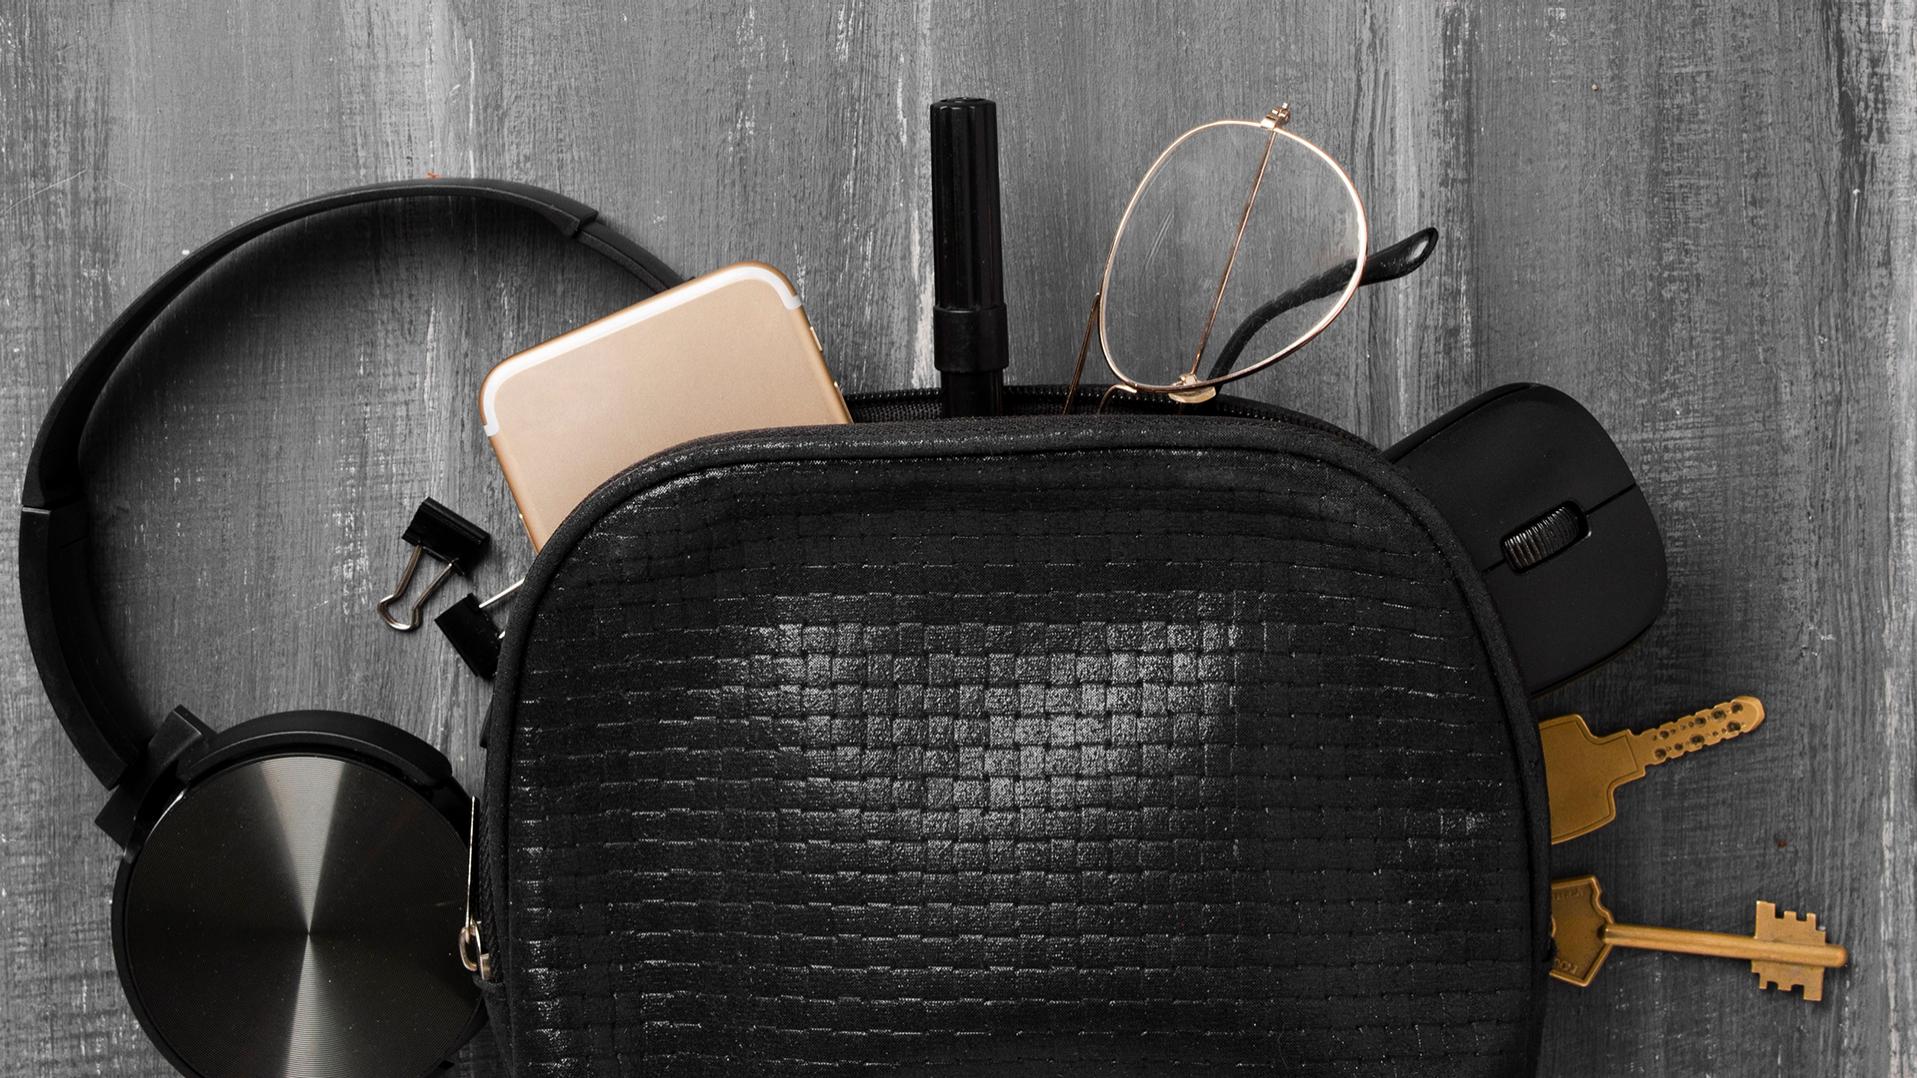 회색 마루에 비스듬히 놓여 있는 검은색 작은 가방에서 헤드폰, 휴대폰, 열쇠, 페이퍼 클립, PC 마우스가 밀려 나와 있고, 자이스 렌즈가 장착되고 듀라비전 코팅이 적용된 안경도 삐져 나와 있다.